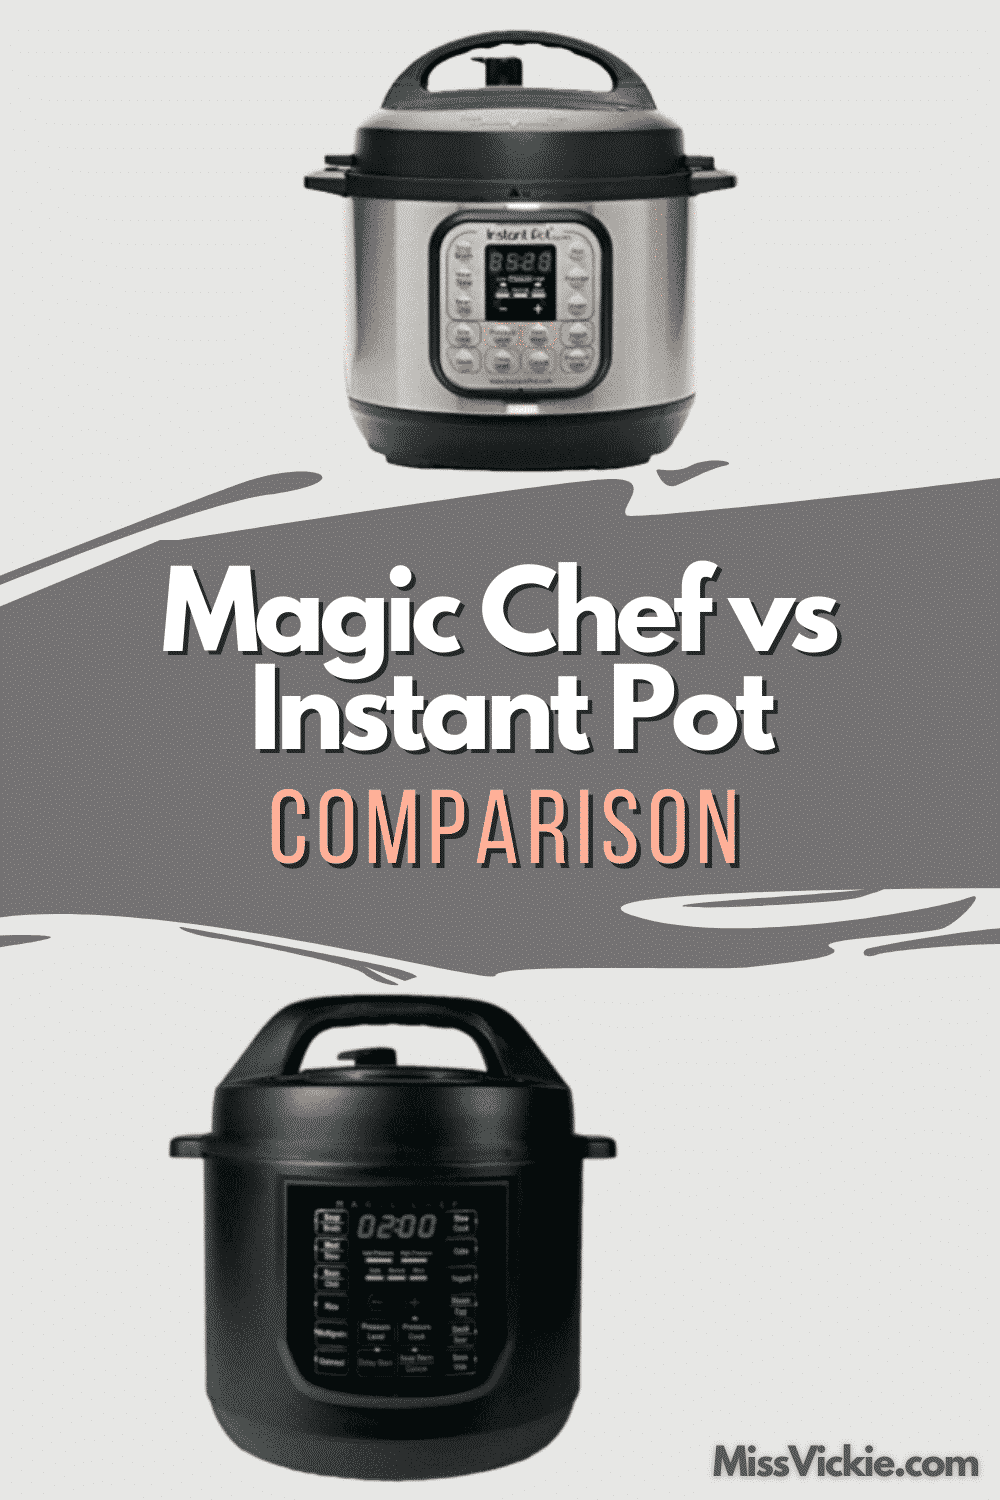 Magic Chef vs Instant Pot